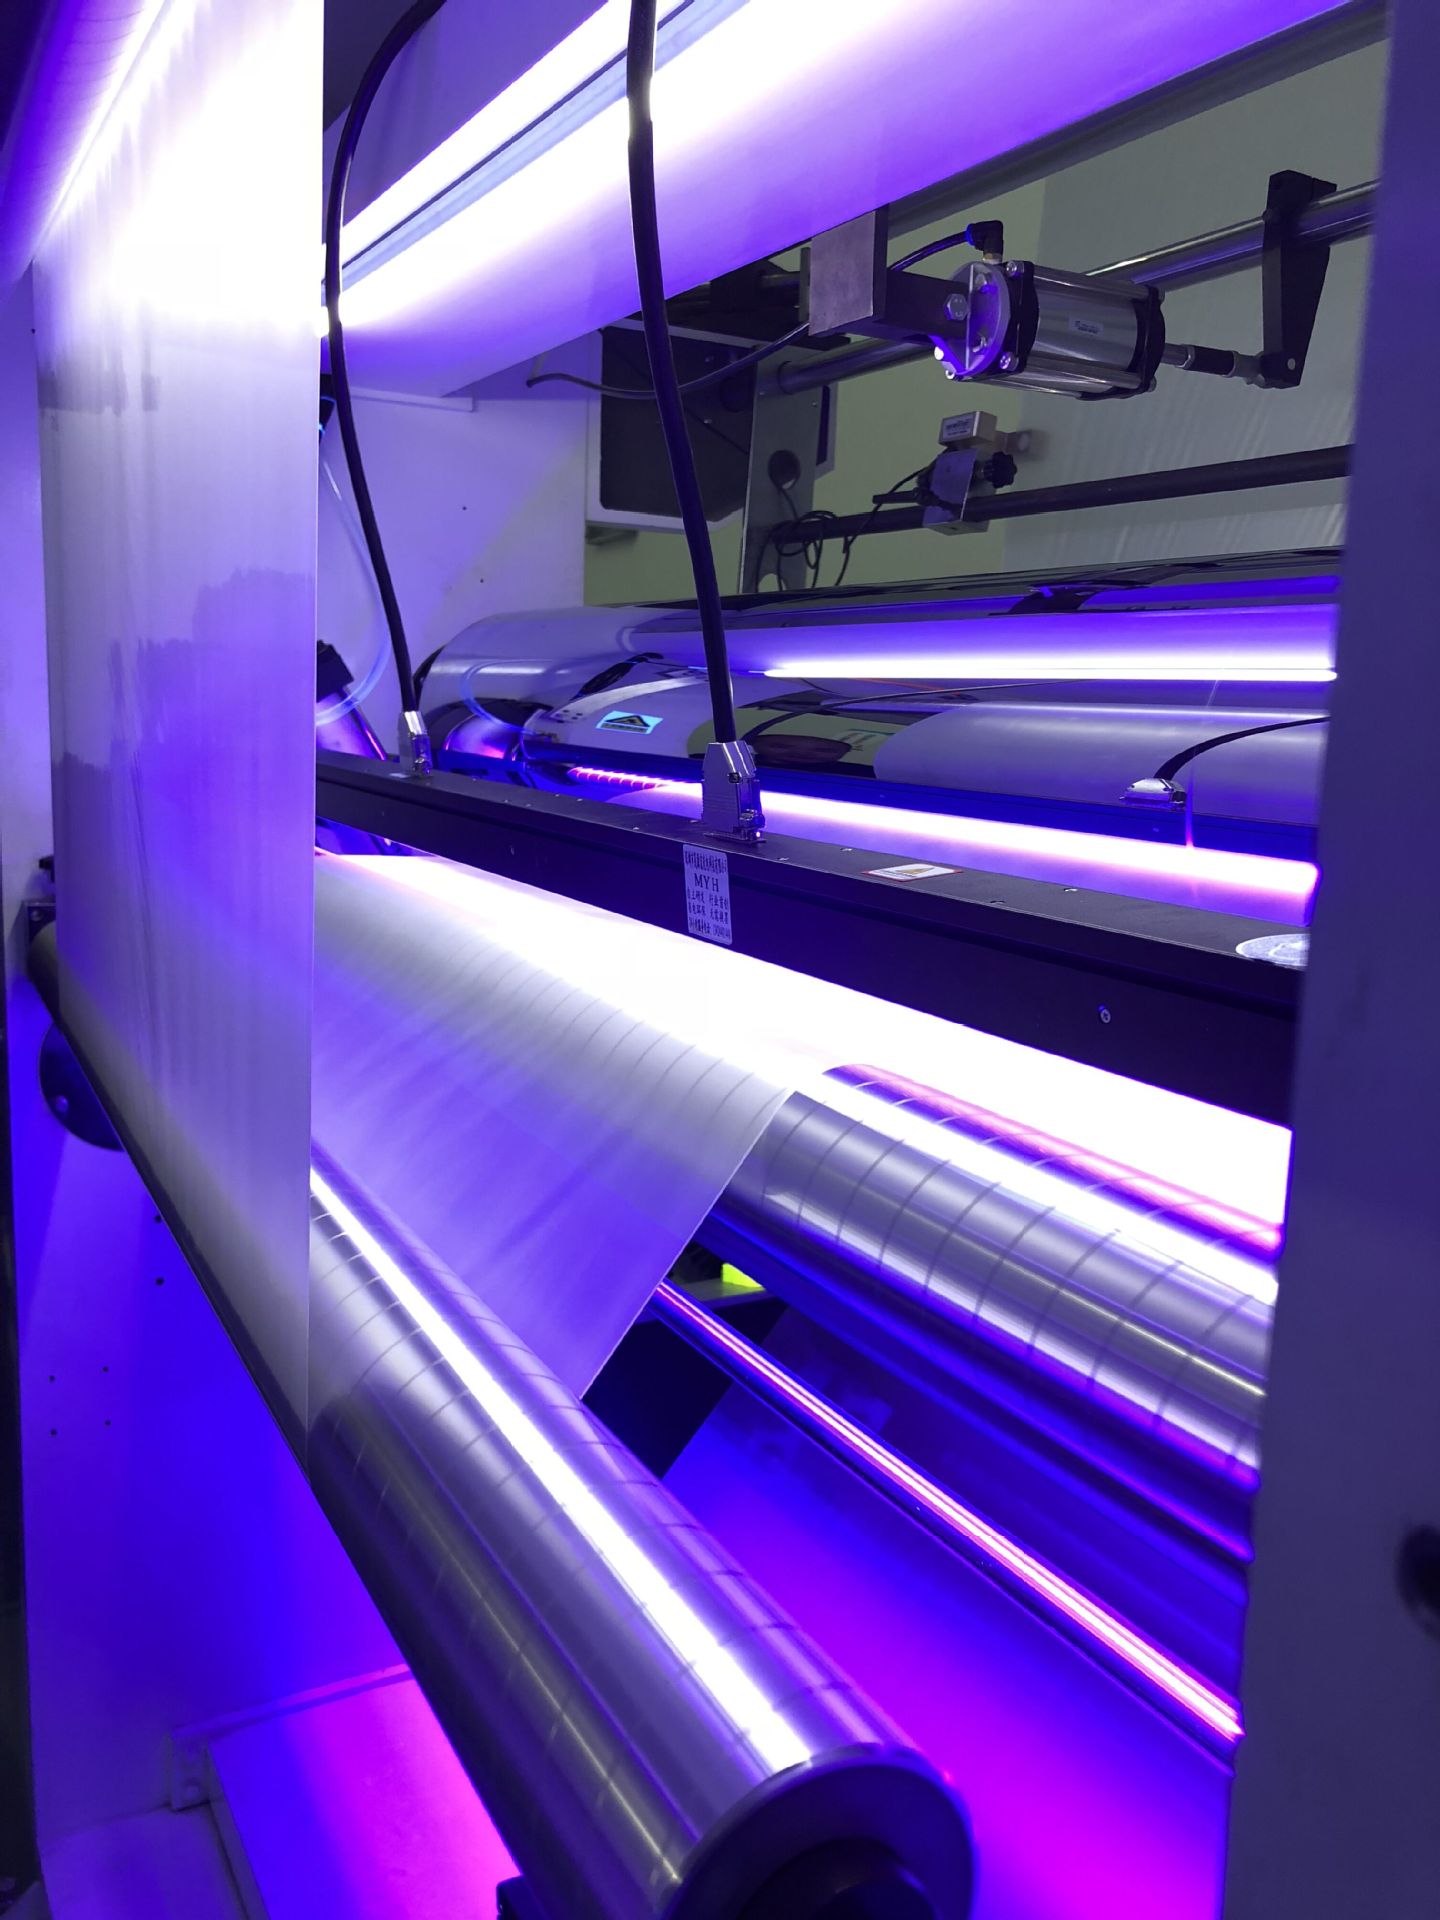 厂家直销LEDUV固化灯涂布机UV固化灯涂布设备uvled固化灯